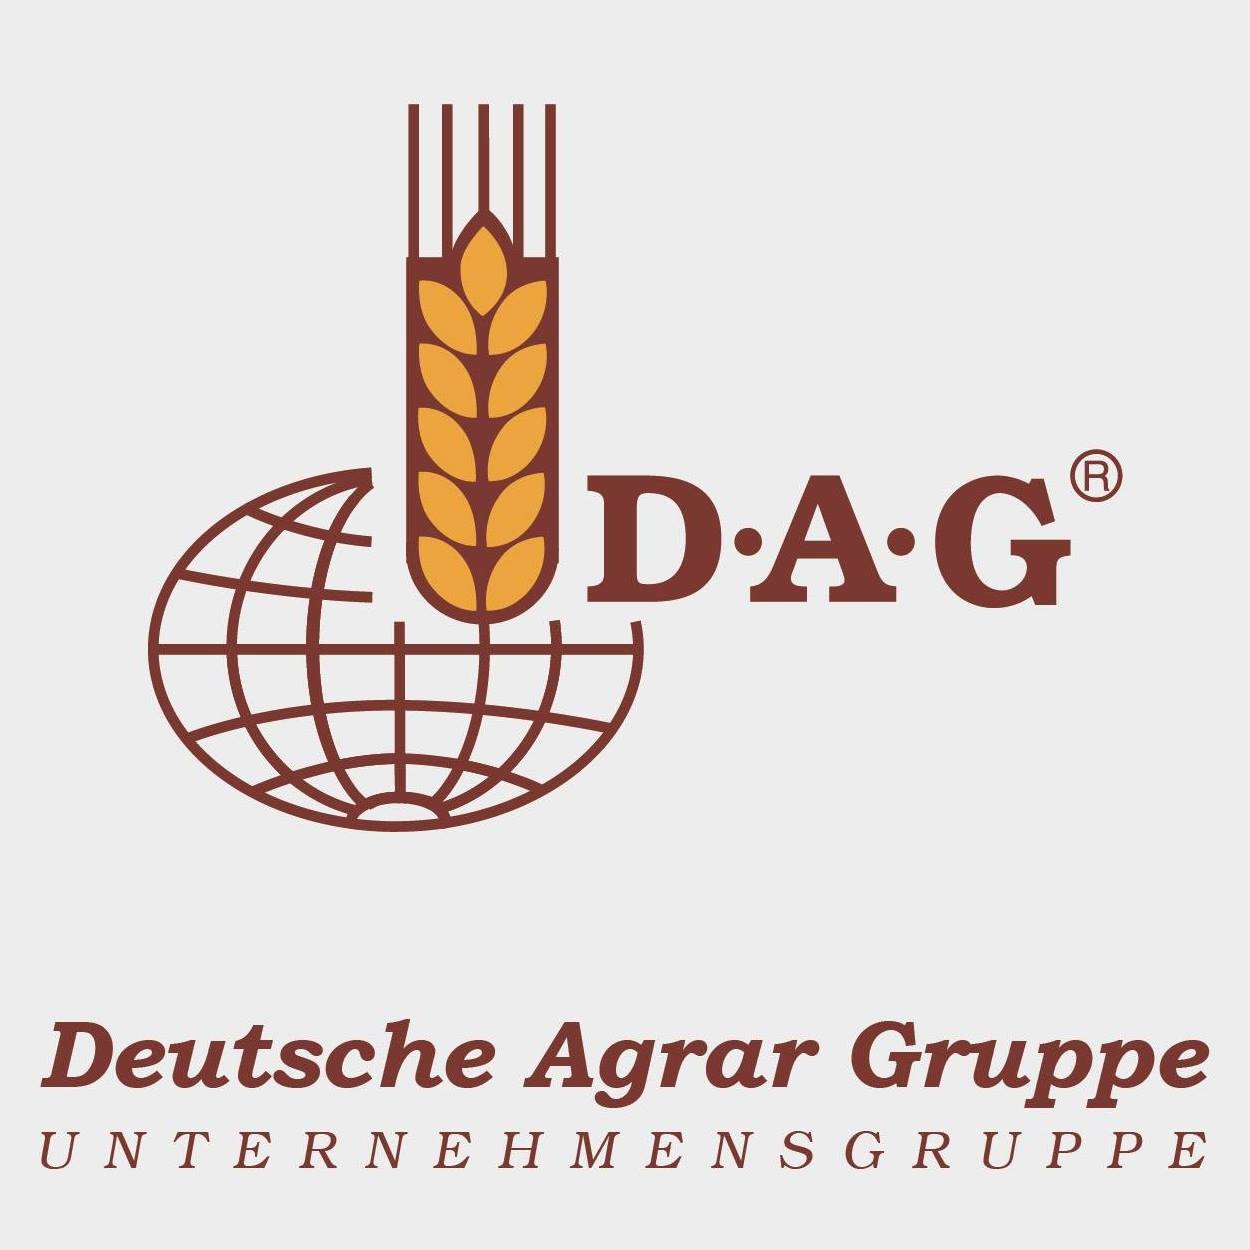 Deutsche Agrar Gruppe